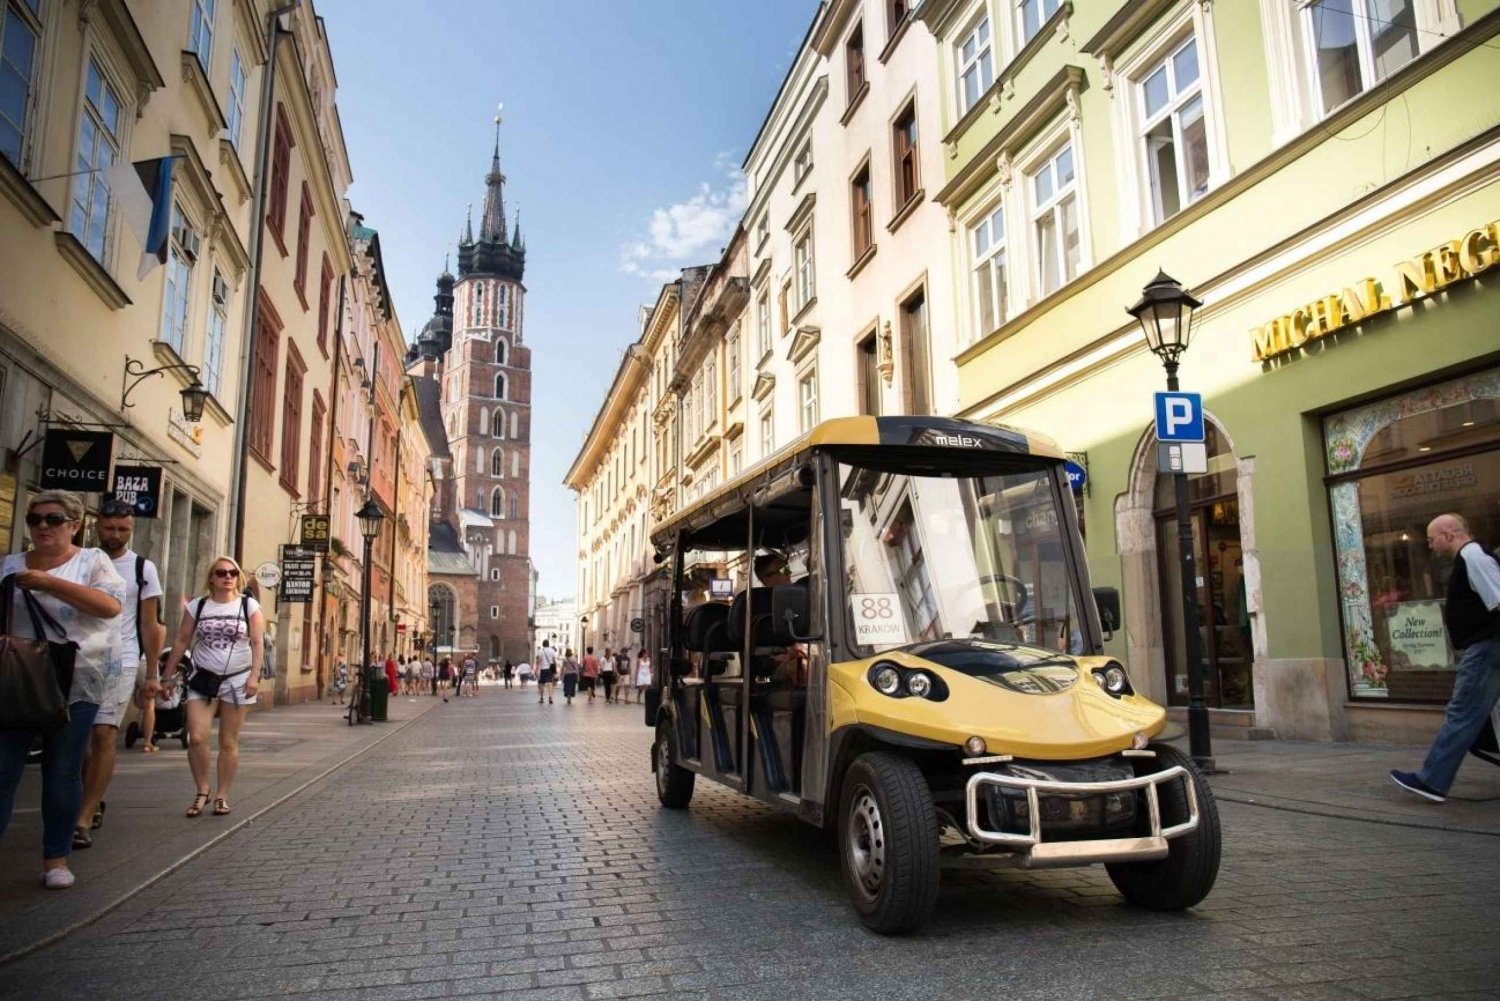 Krakau: Stadtrundfahrt durch 3 Bezirke mit dem Elektroauto